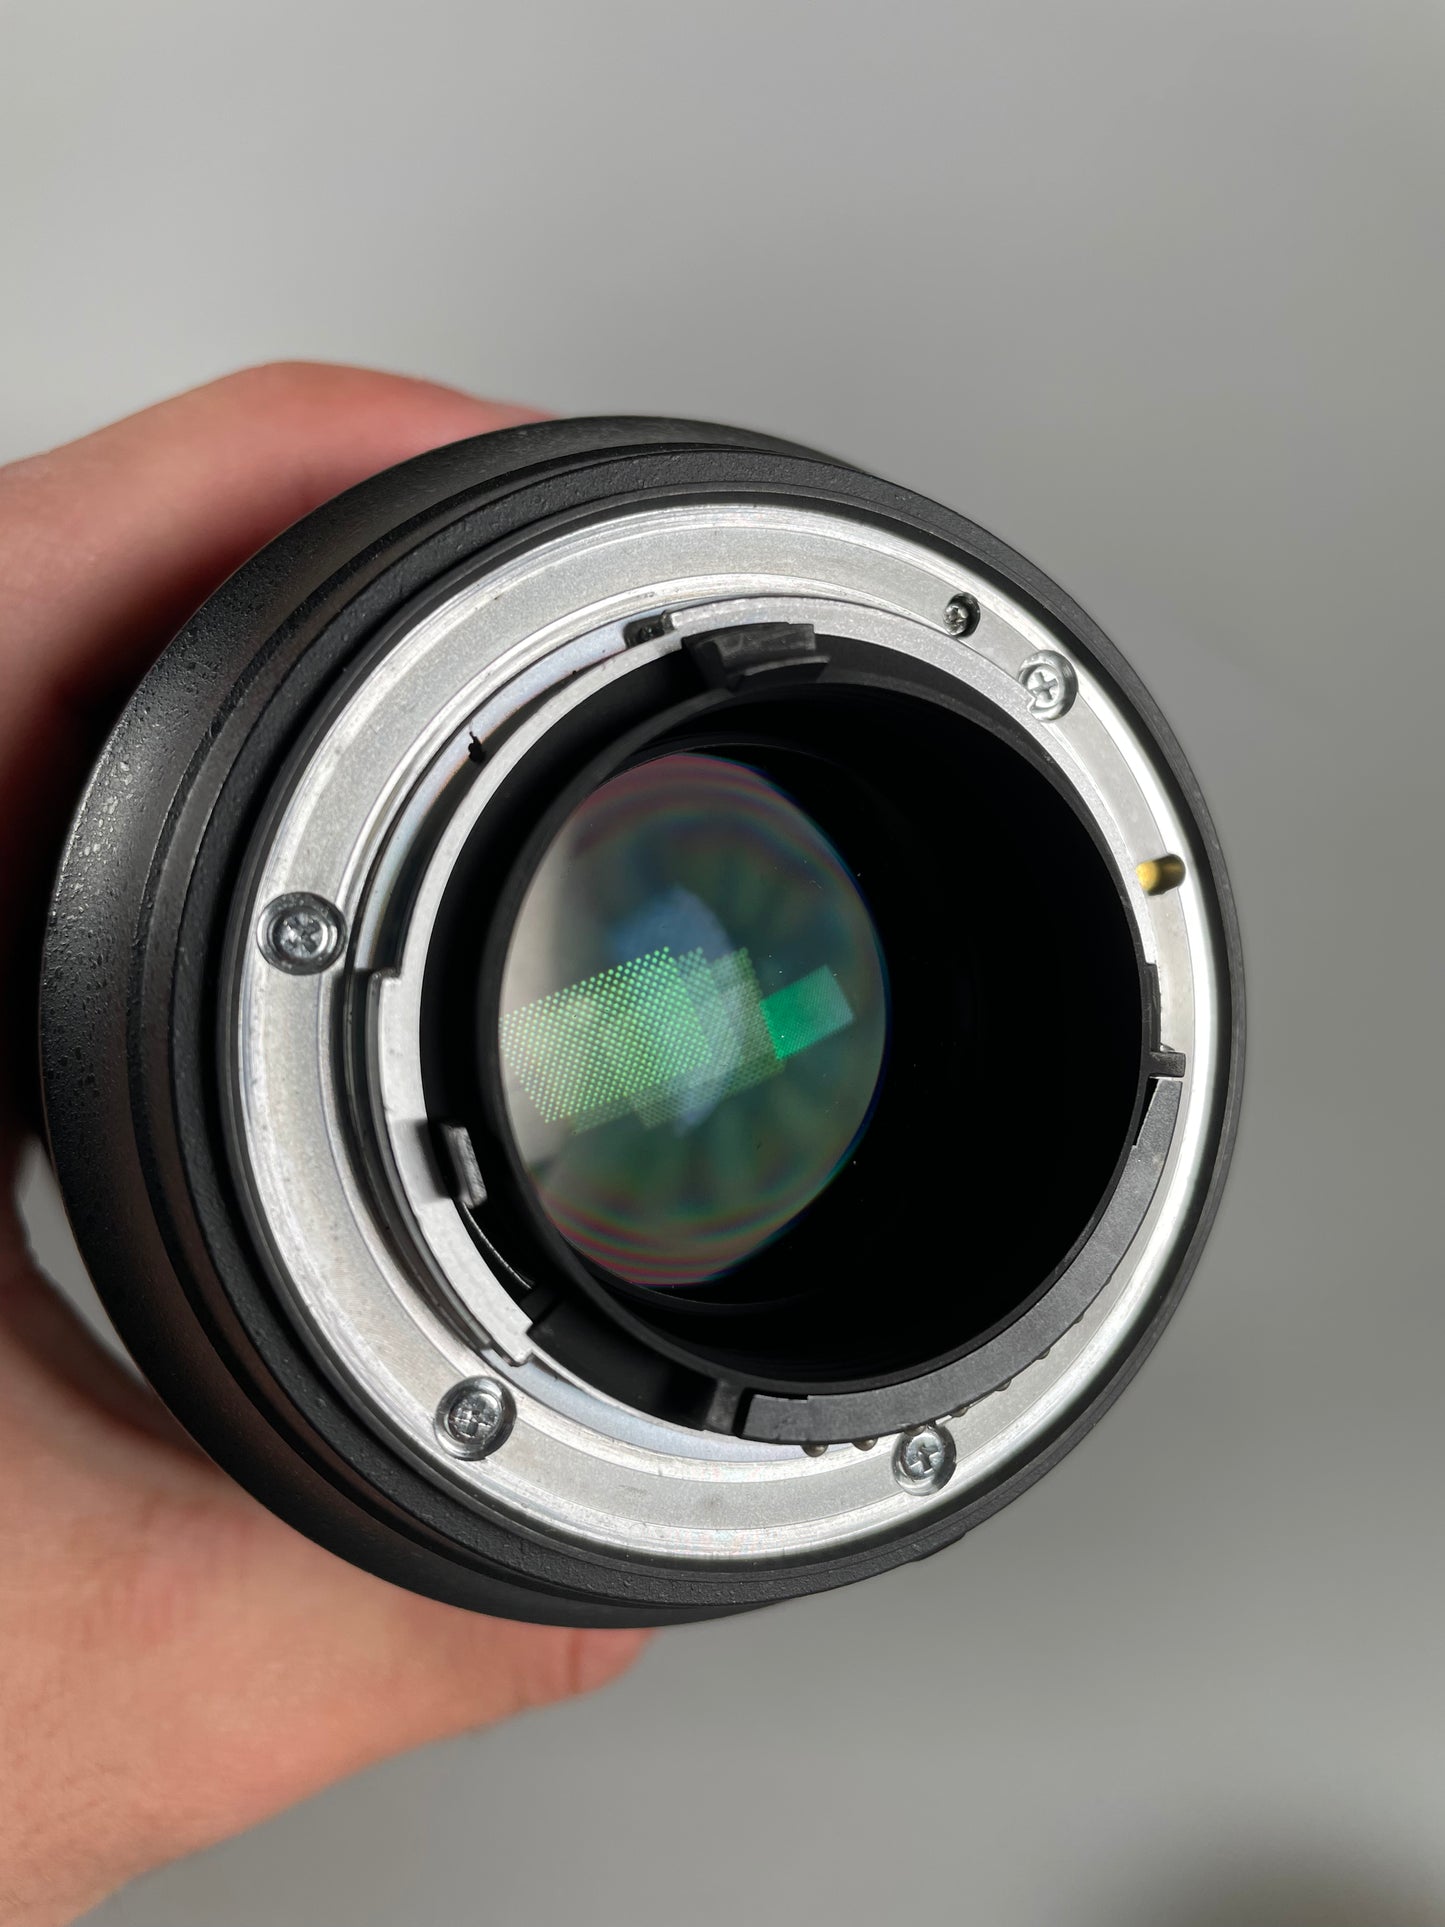 Nikon AF-S NIKKOR 35mm f1.4G N Lens with Hood